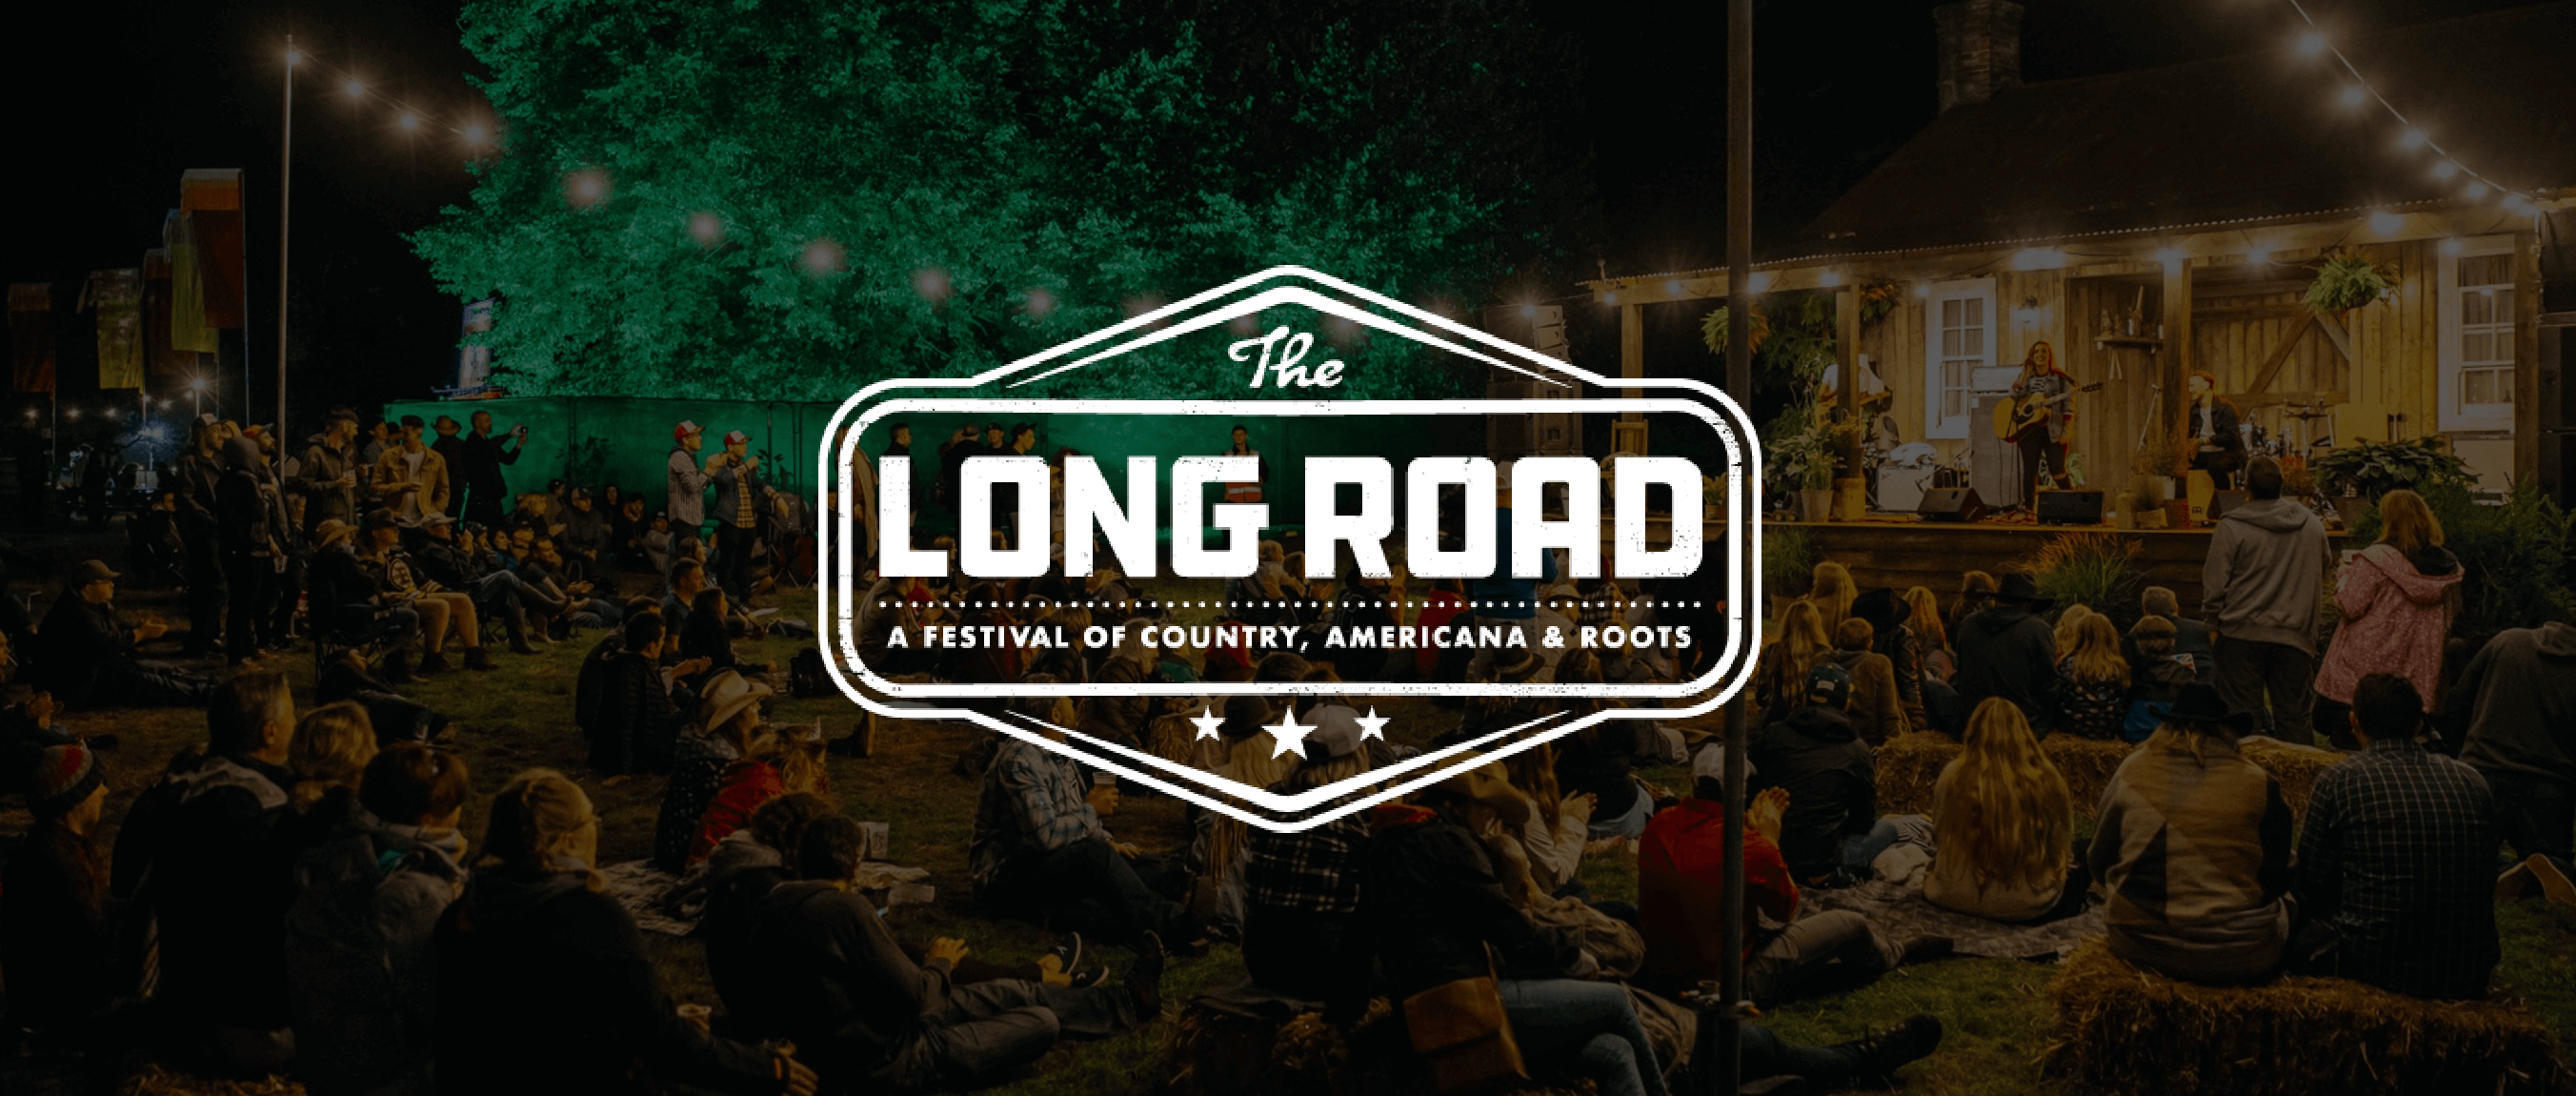 the long road festival banner